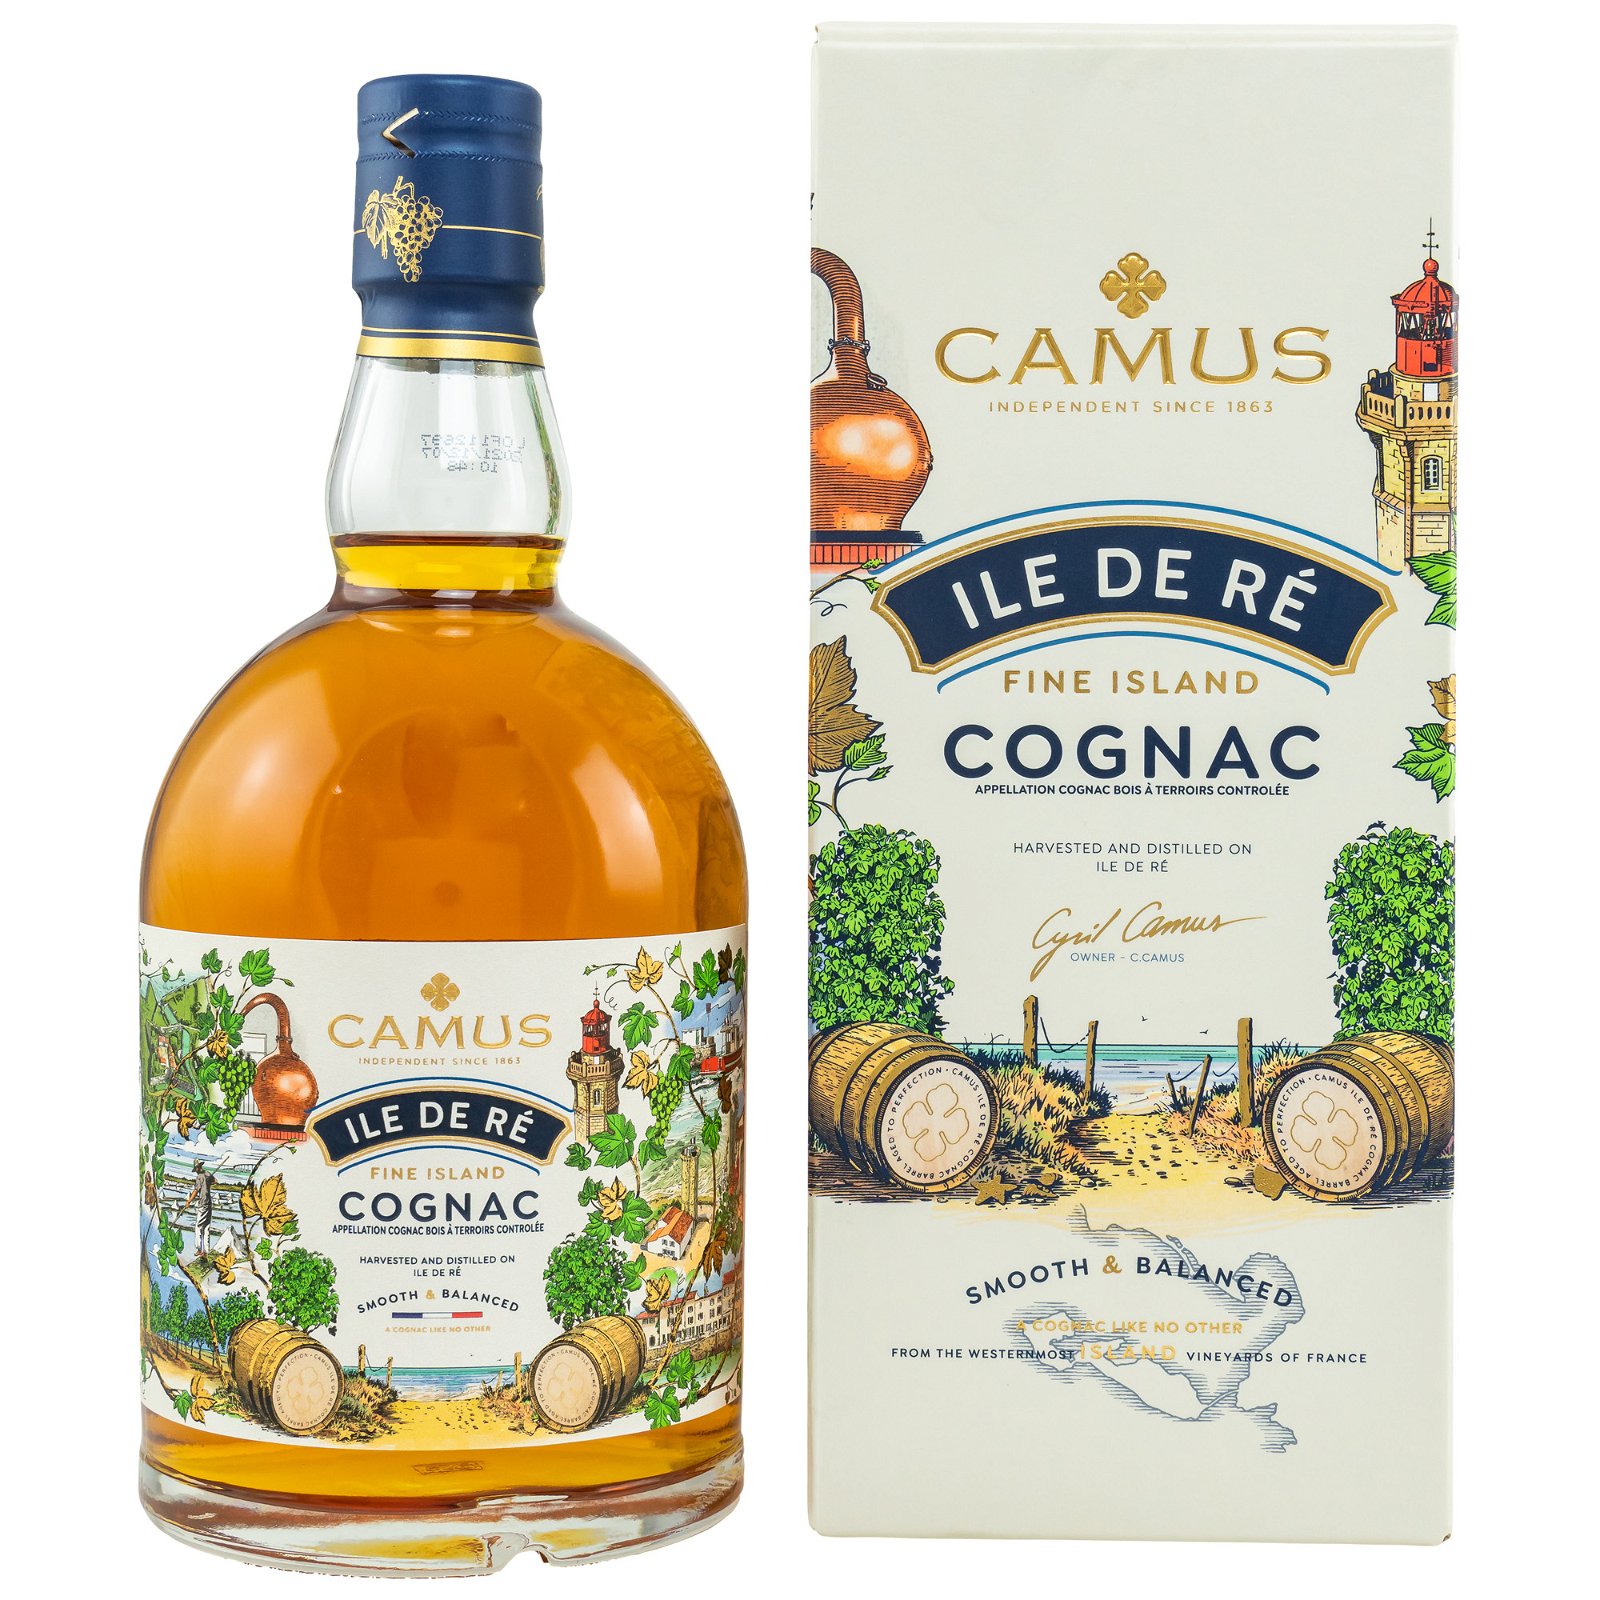 Camus Ile de Re Fine Island Cognac